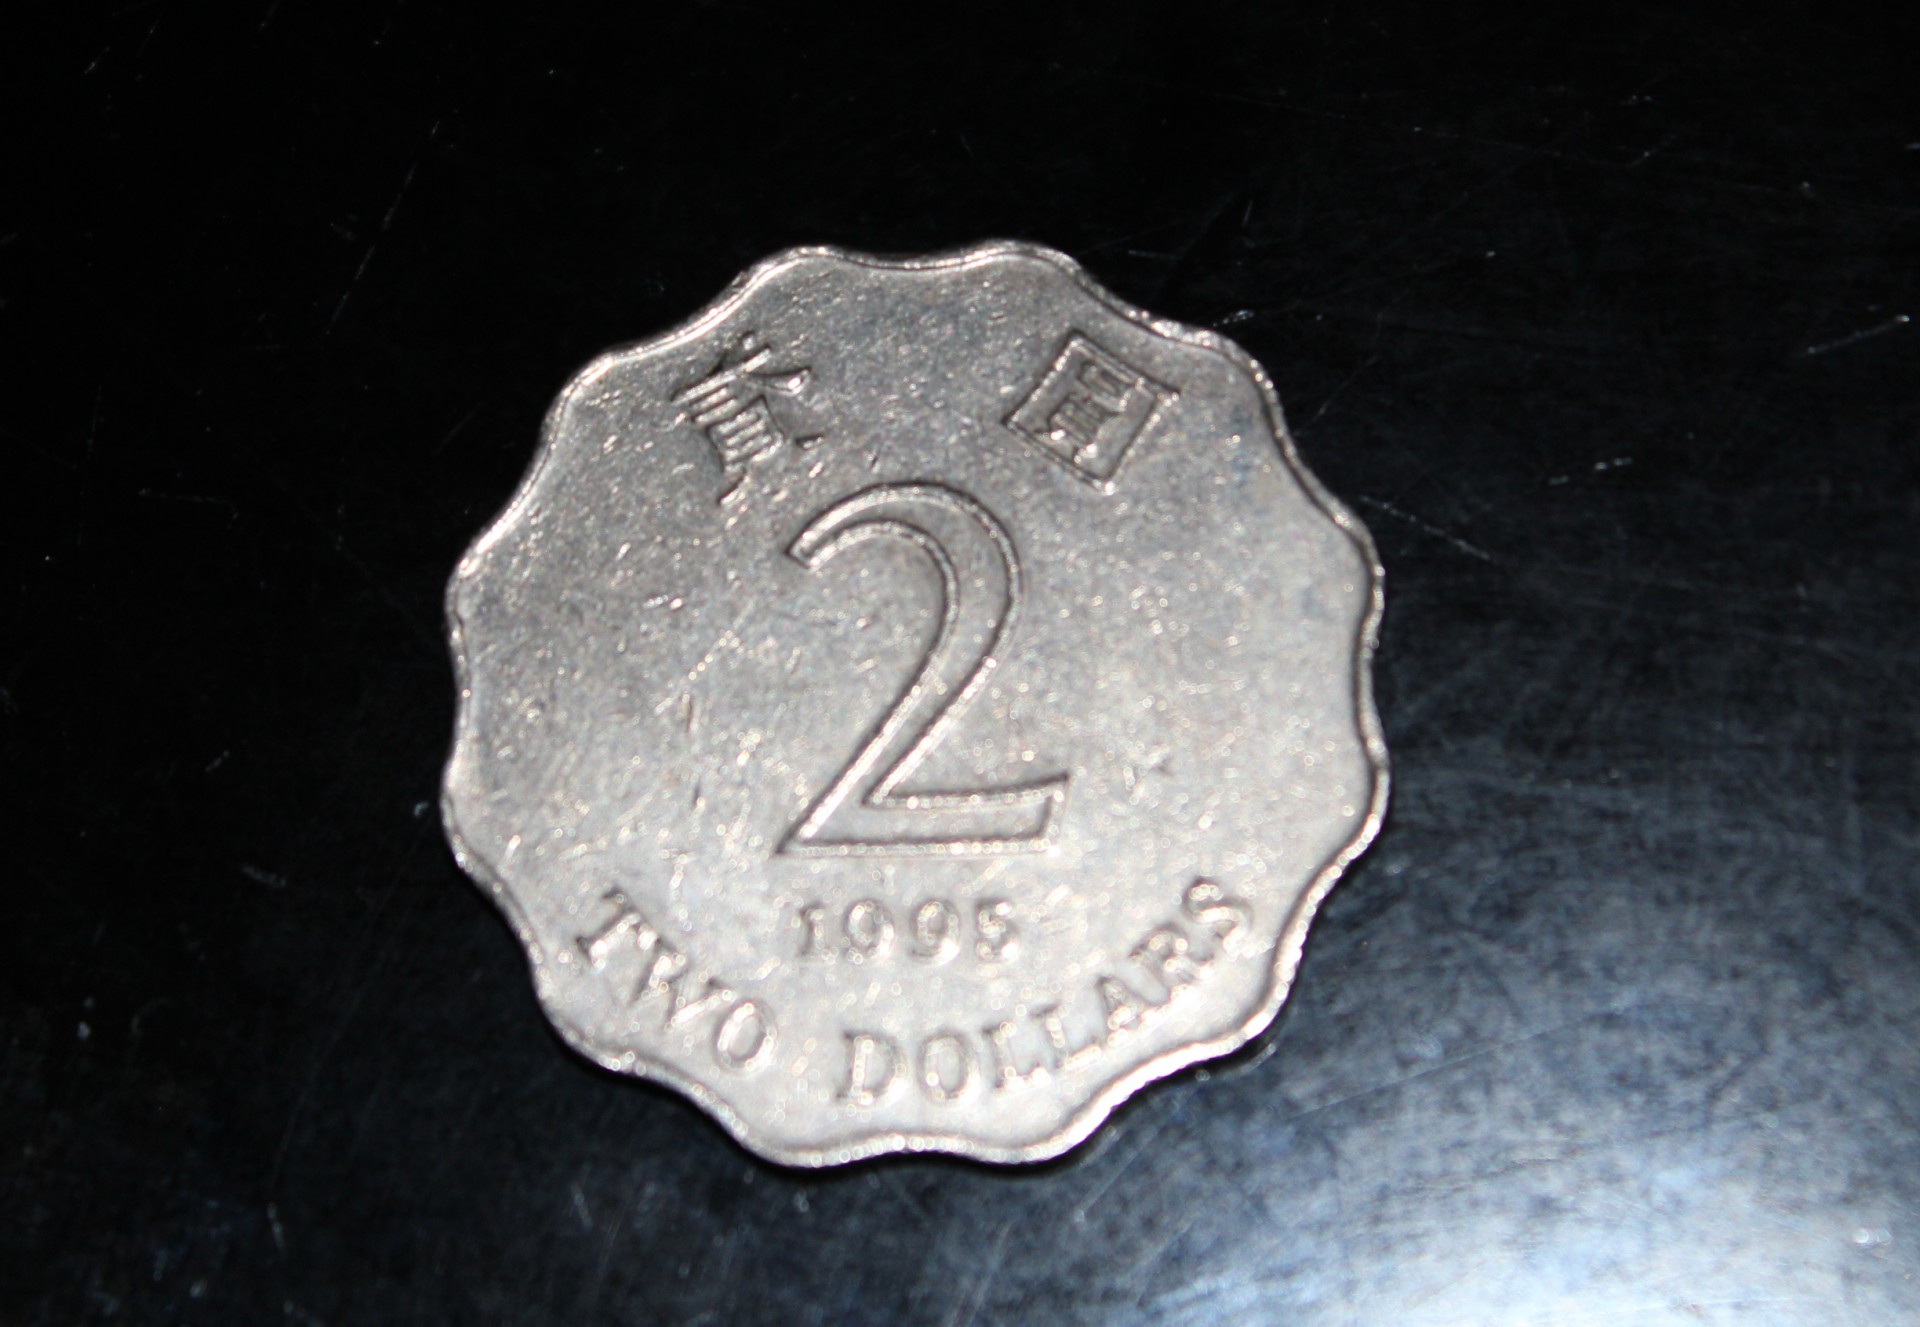 2 dólares de Hong Kong monedas